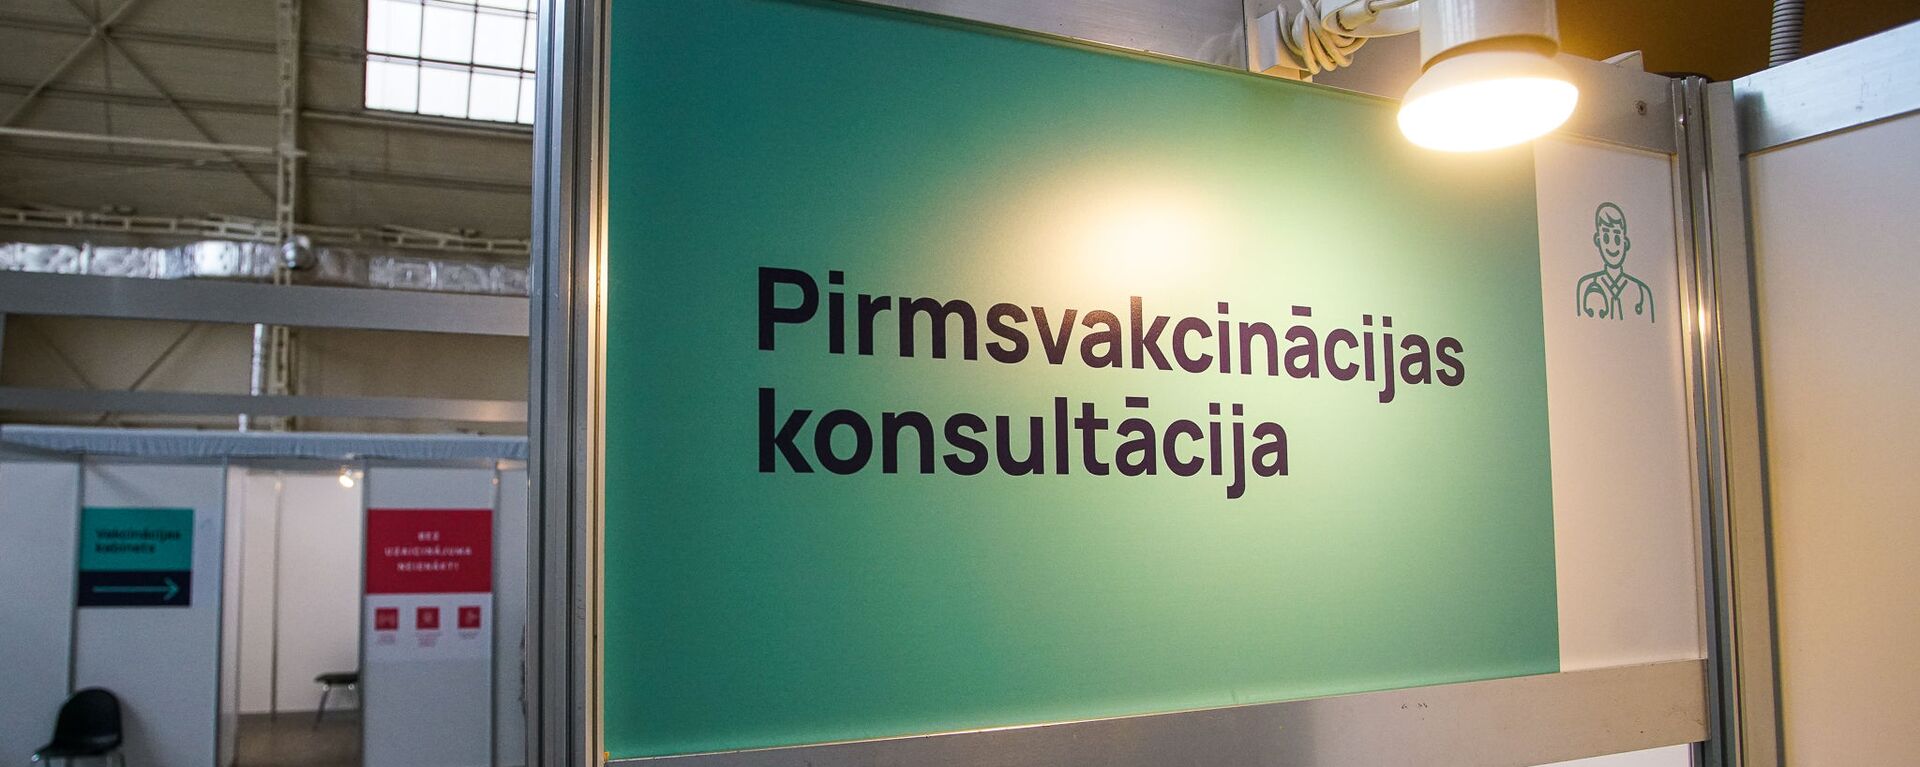 Центр вакцинации открылся в Гастрономическом павильоне Центрального рынка в Риге - Sputnik Latvija, 1920, 17.10.2021